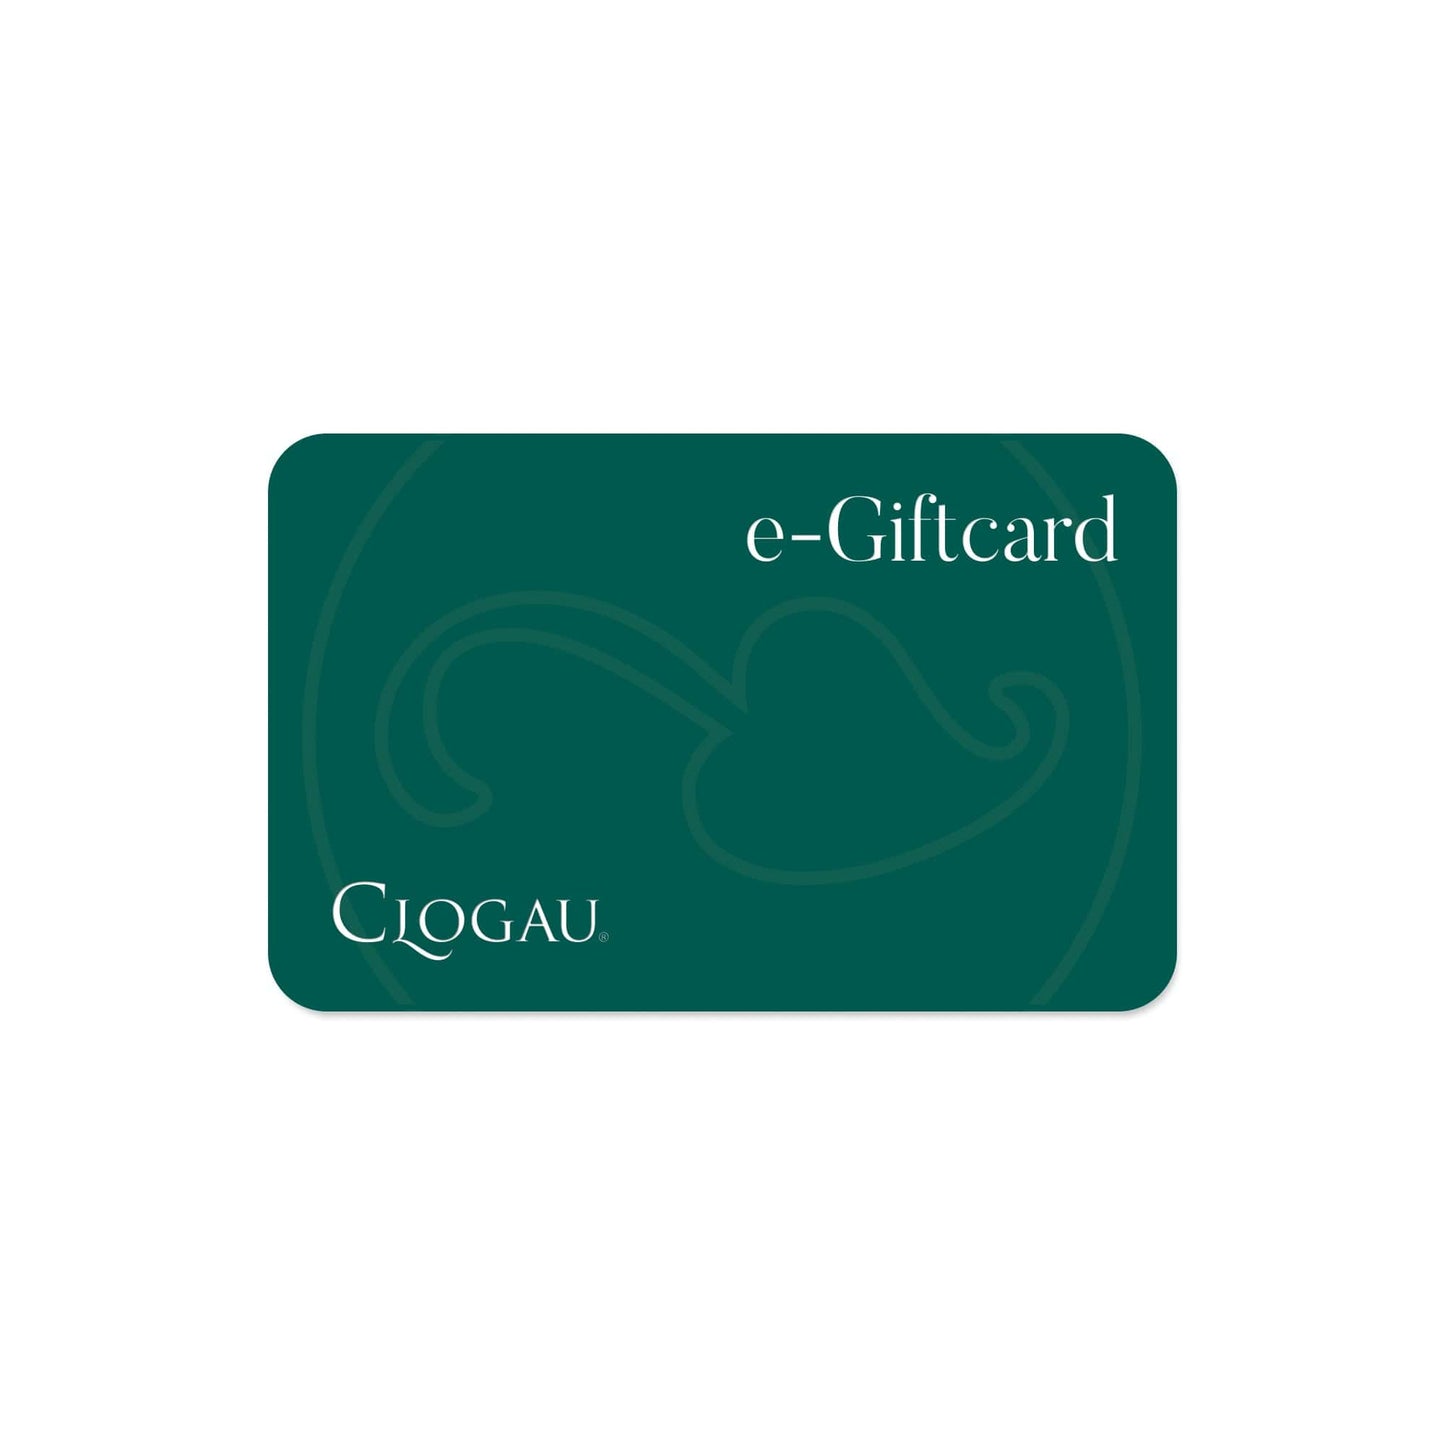 Clogau e-Giftcard